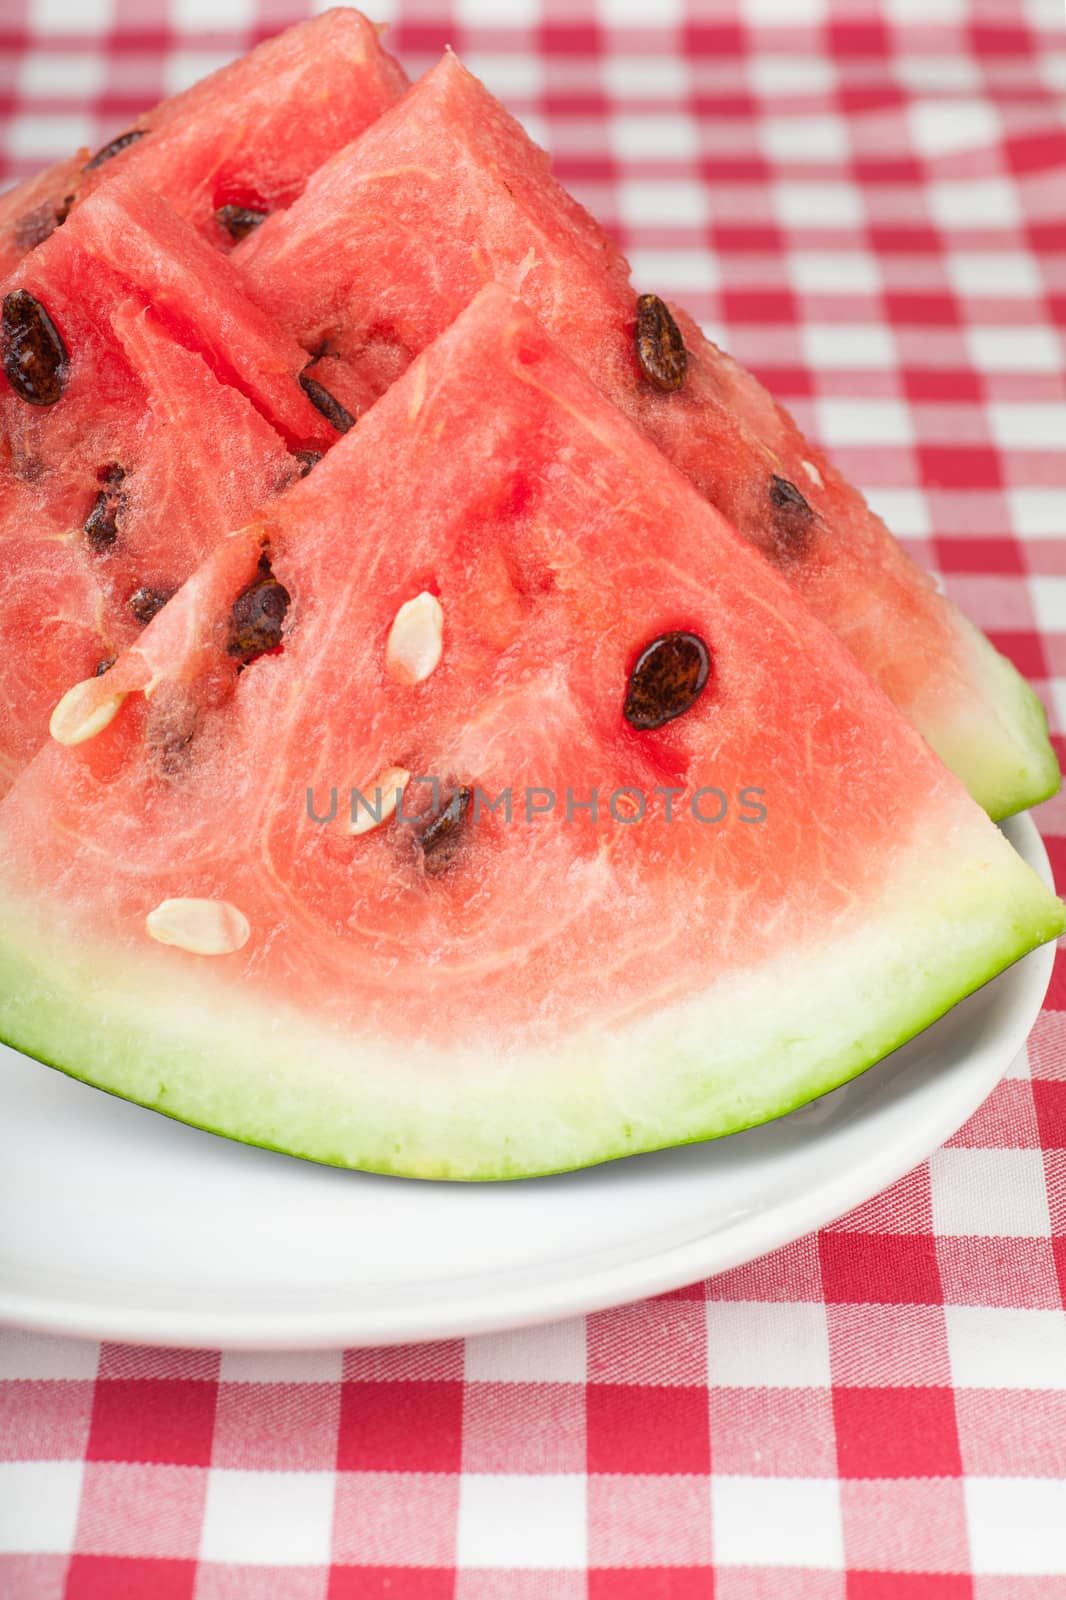 Watermelon slices by AGorohov